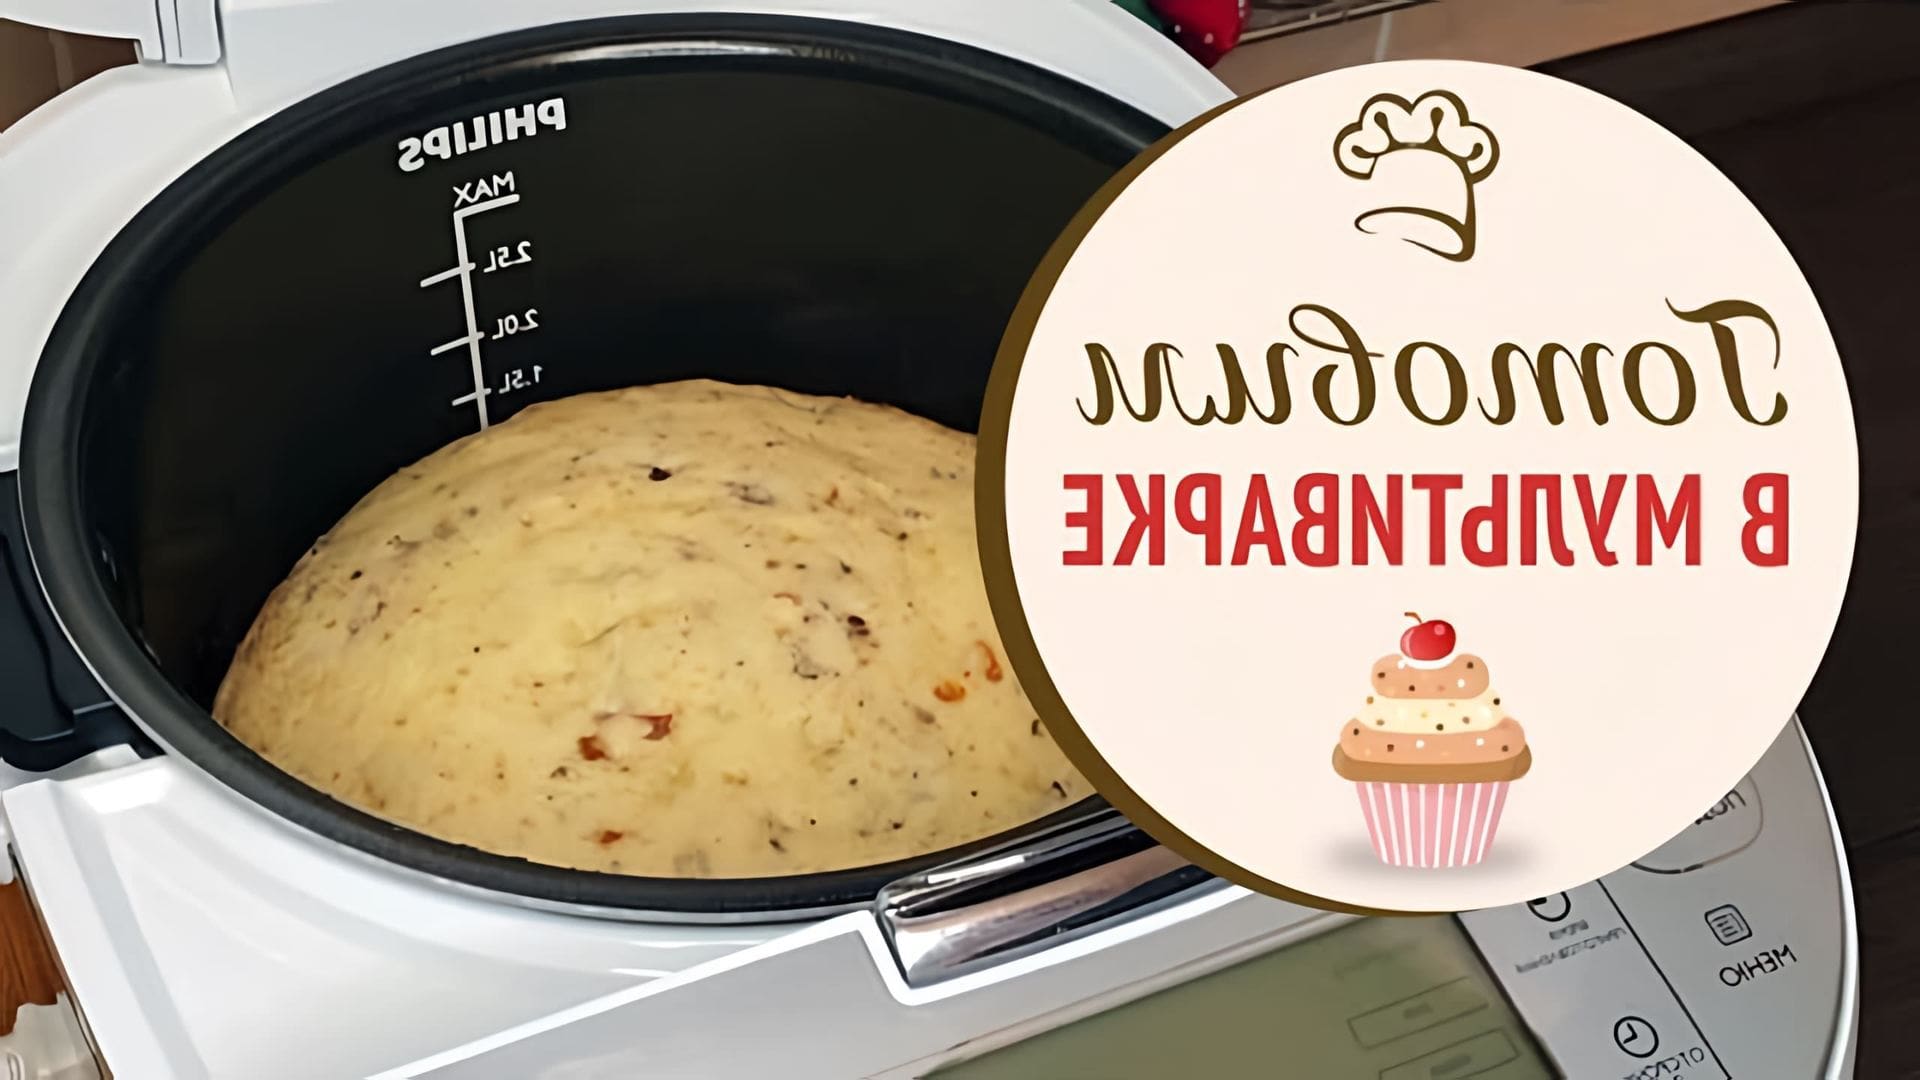 В этом видео показано, как приготовить кекс в мультиварке из простых продуктов